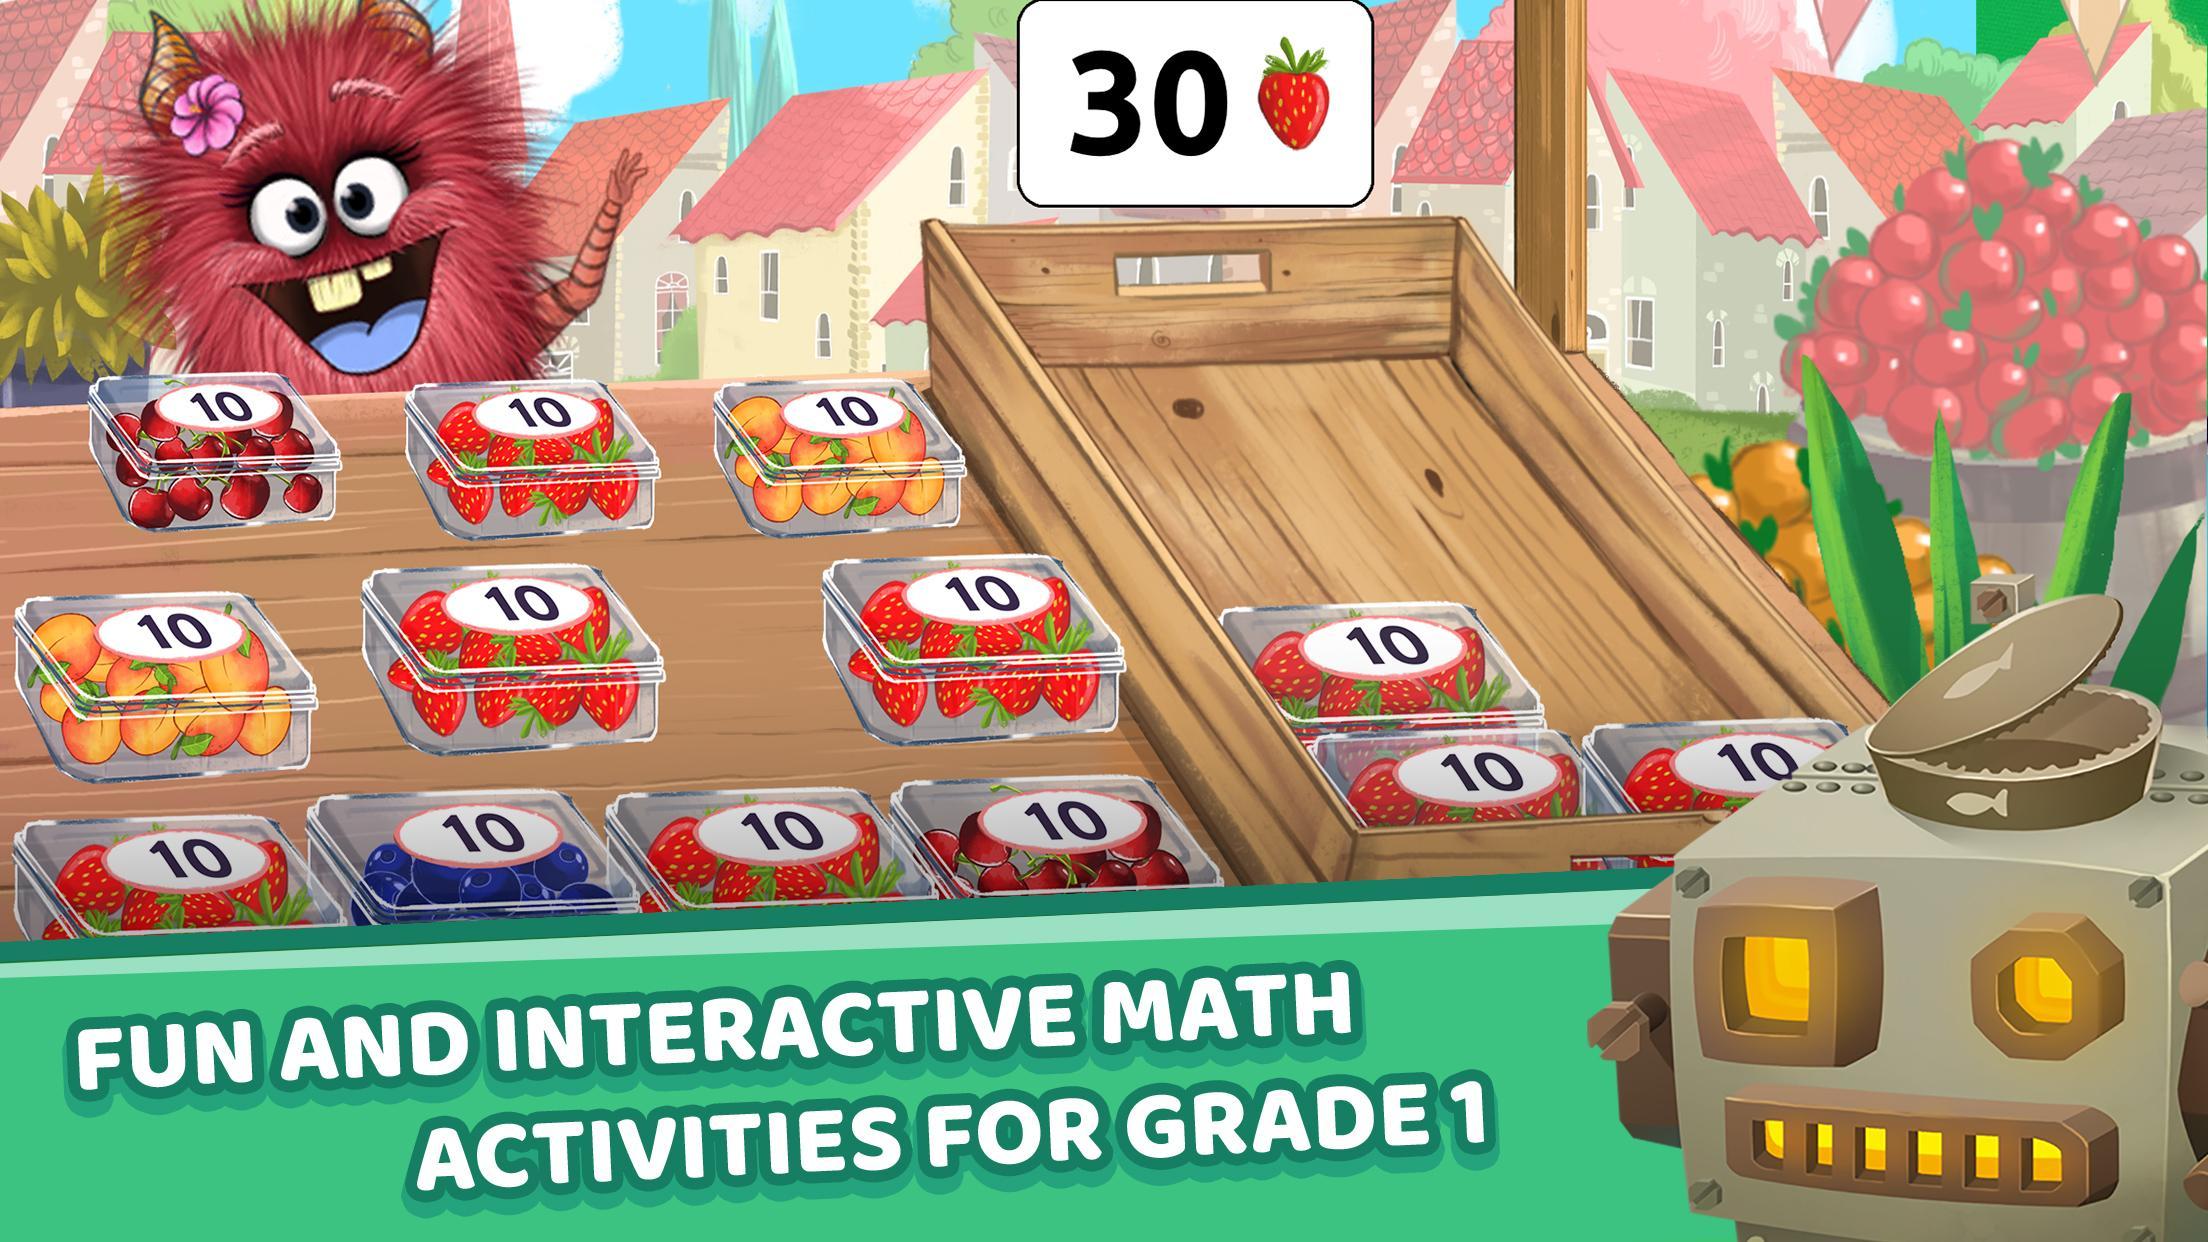 Matific Galaxy - Maths Games for 1st Graders 2.2.2 Screenshot 15